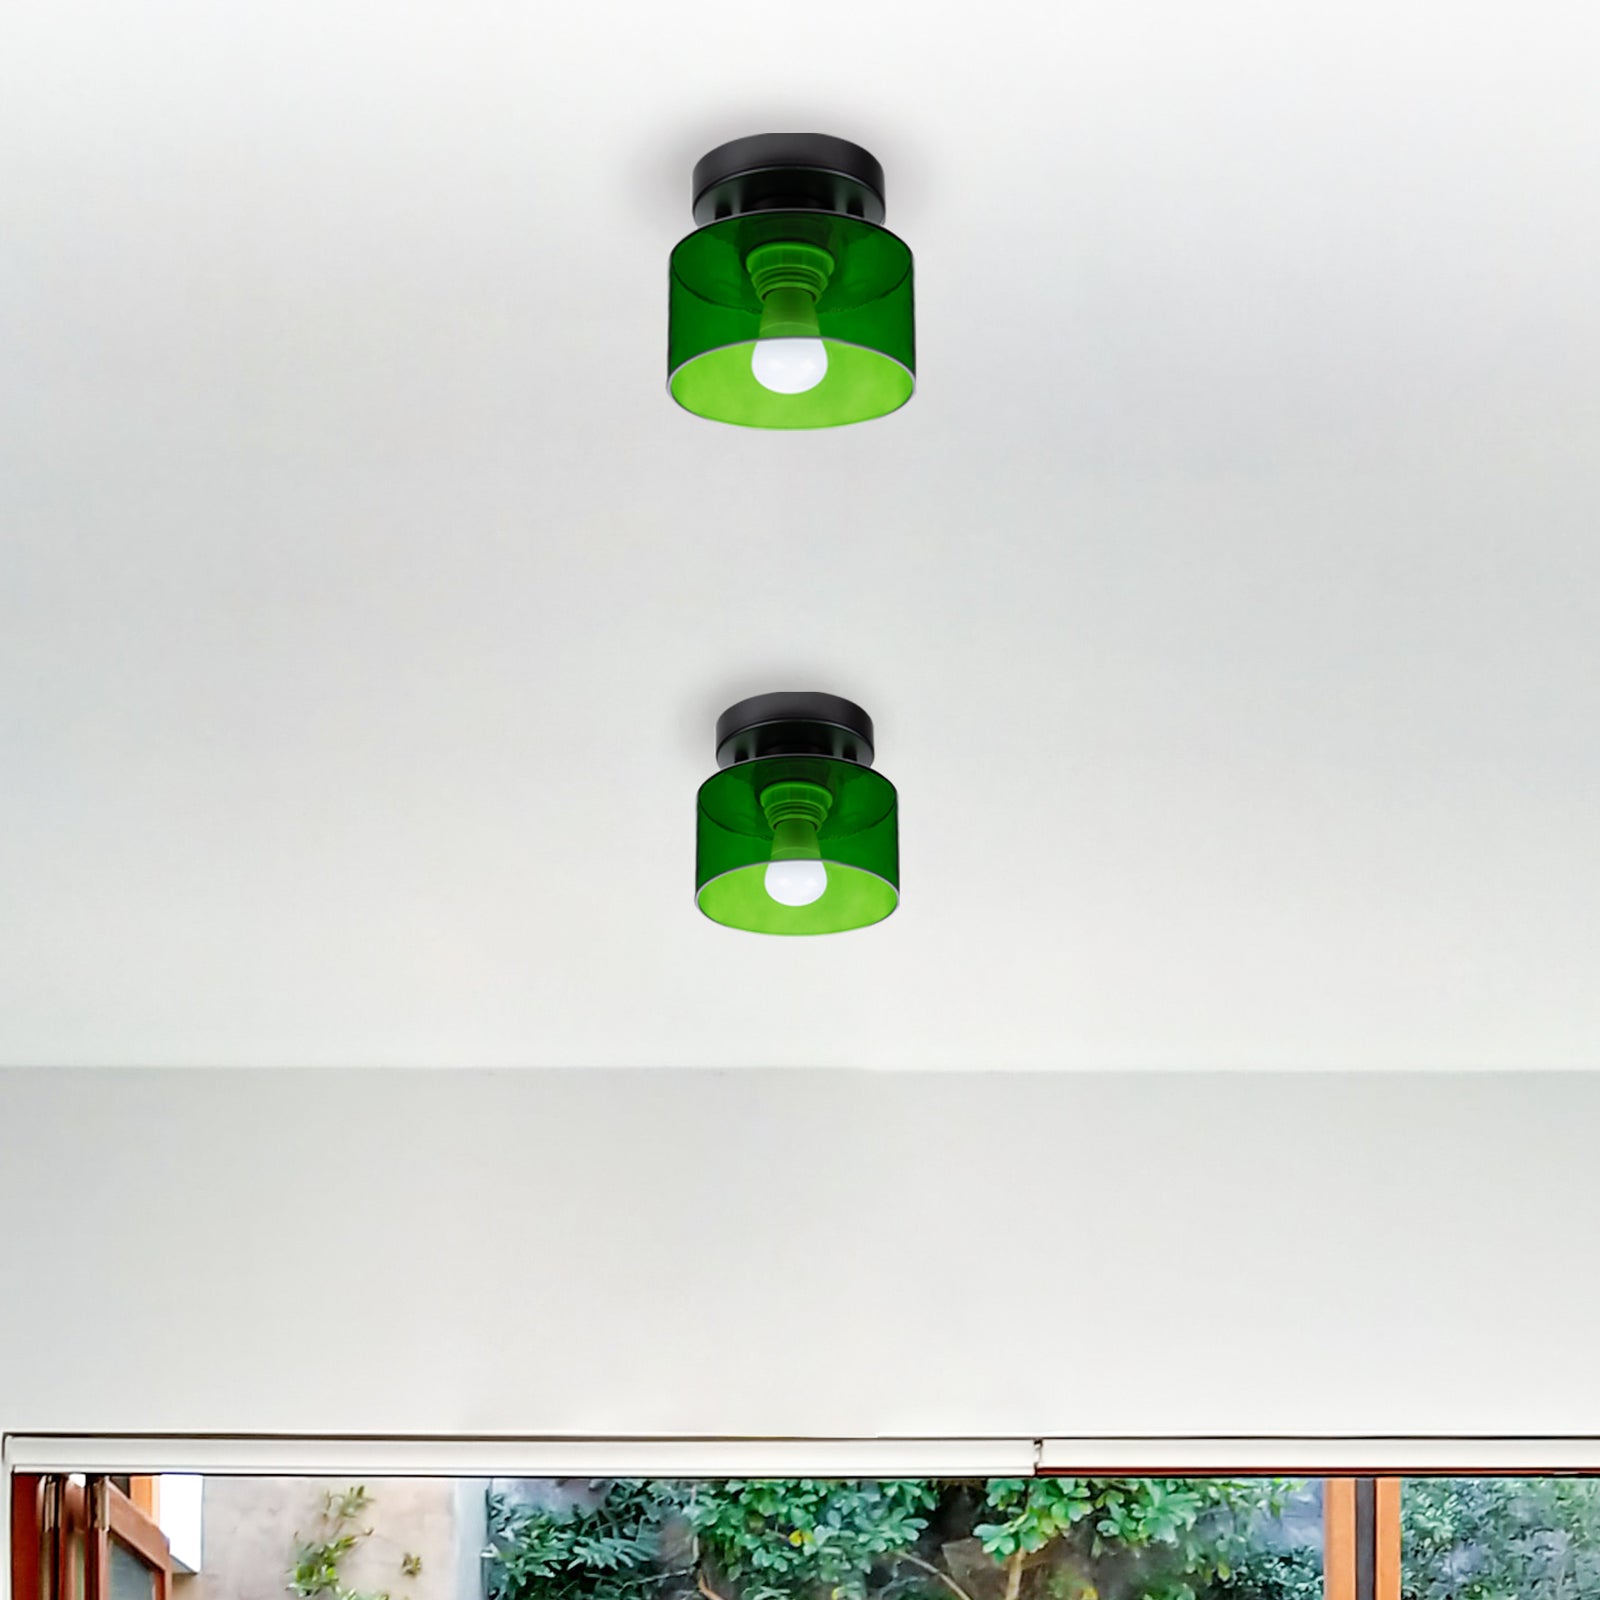 Bauhaus Small Glass Ceiling Light